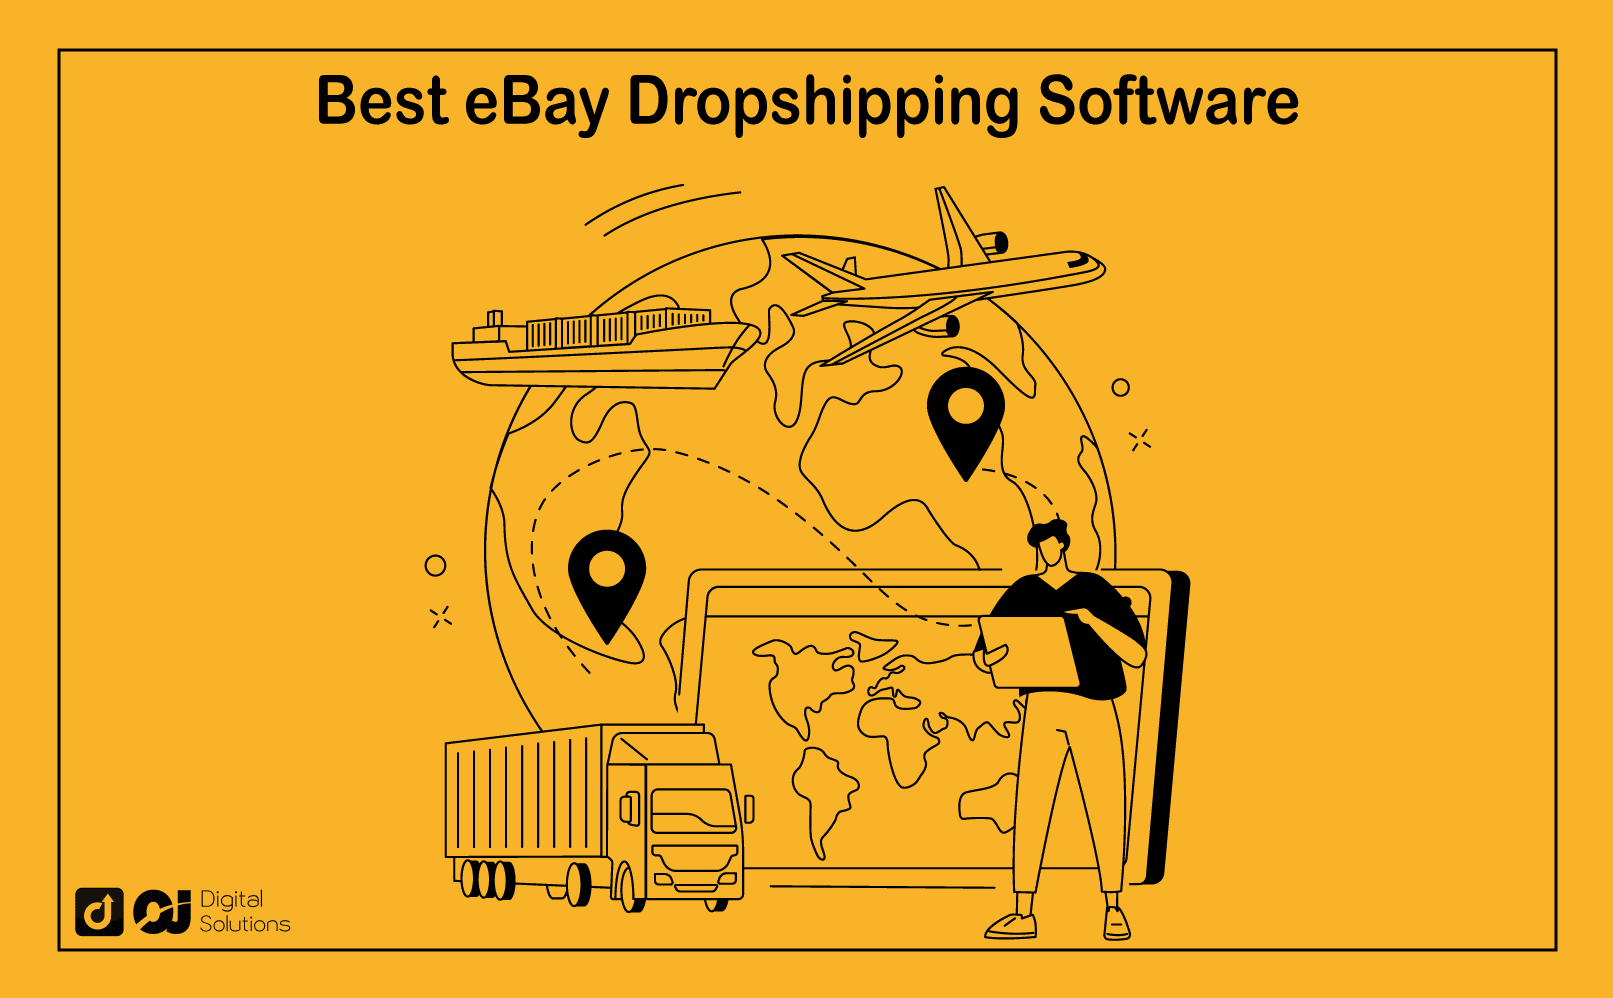 ebay dropshipping software